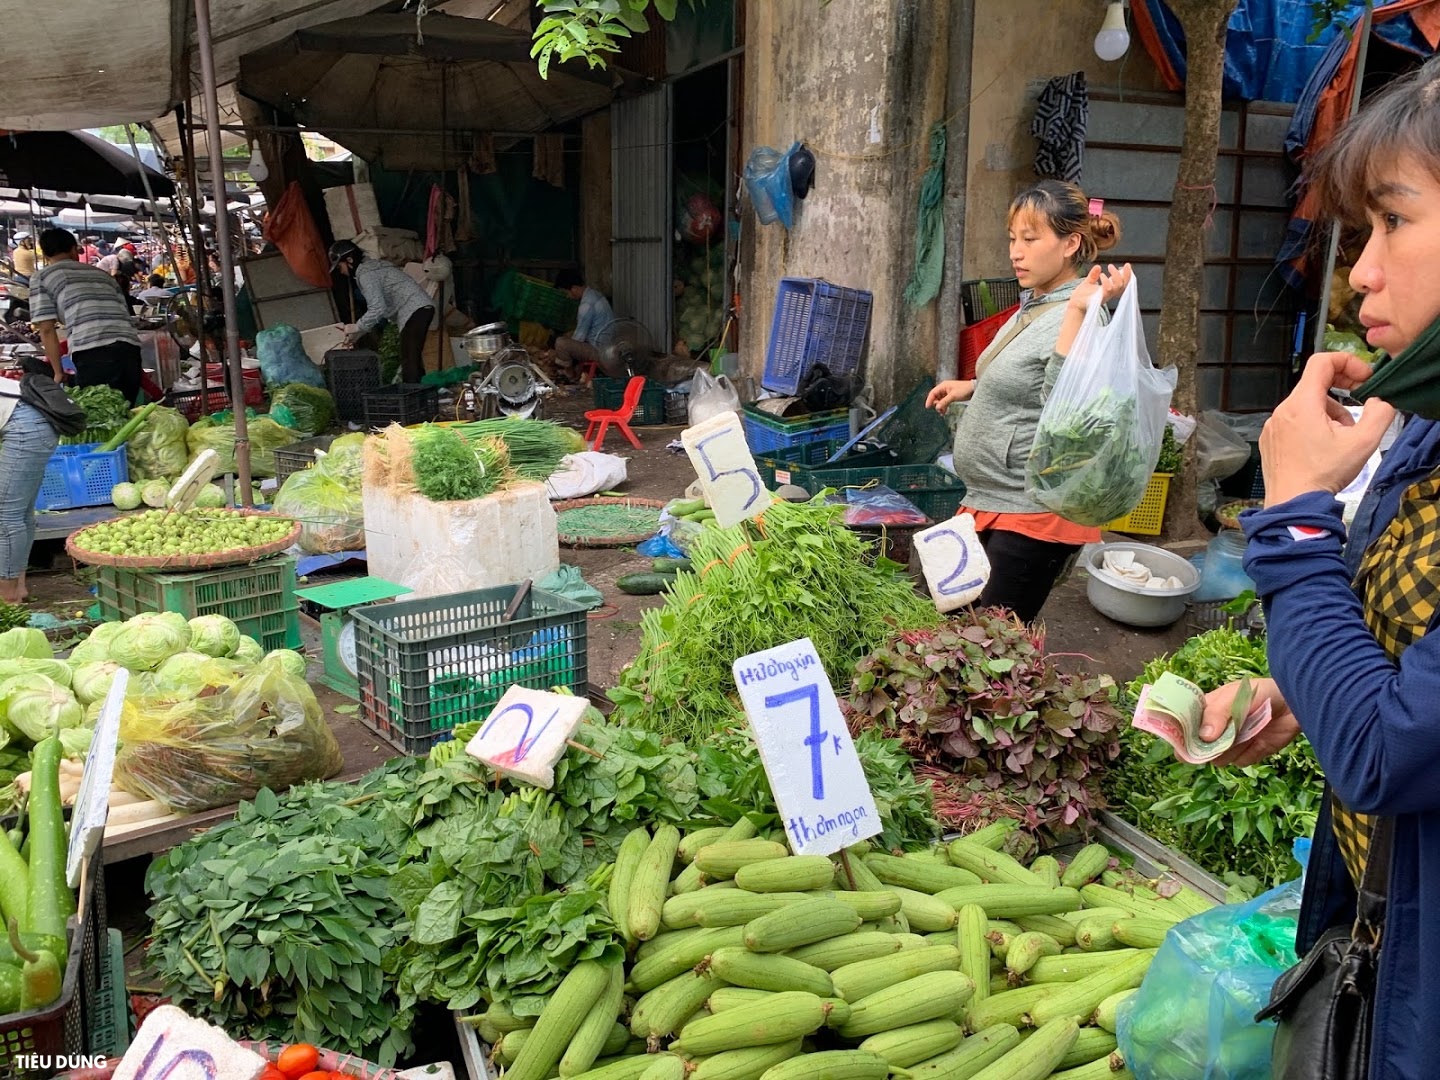 Đi chợ mấy ngày này cực đã, bà nội trợ cầm 10.000 đồng đủ rau xanh ăn cả ngày cho gia đình - Ảnh 2.